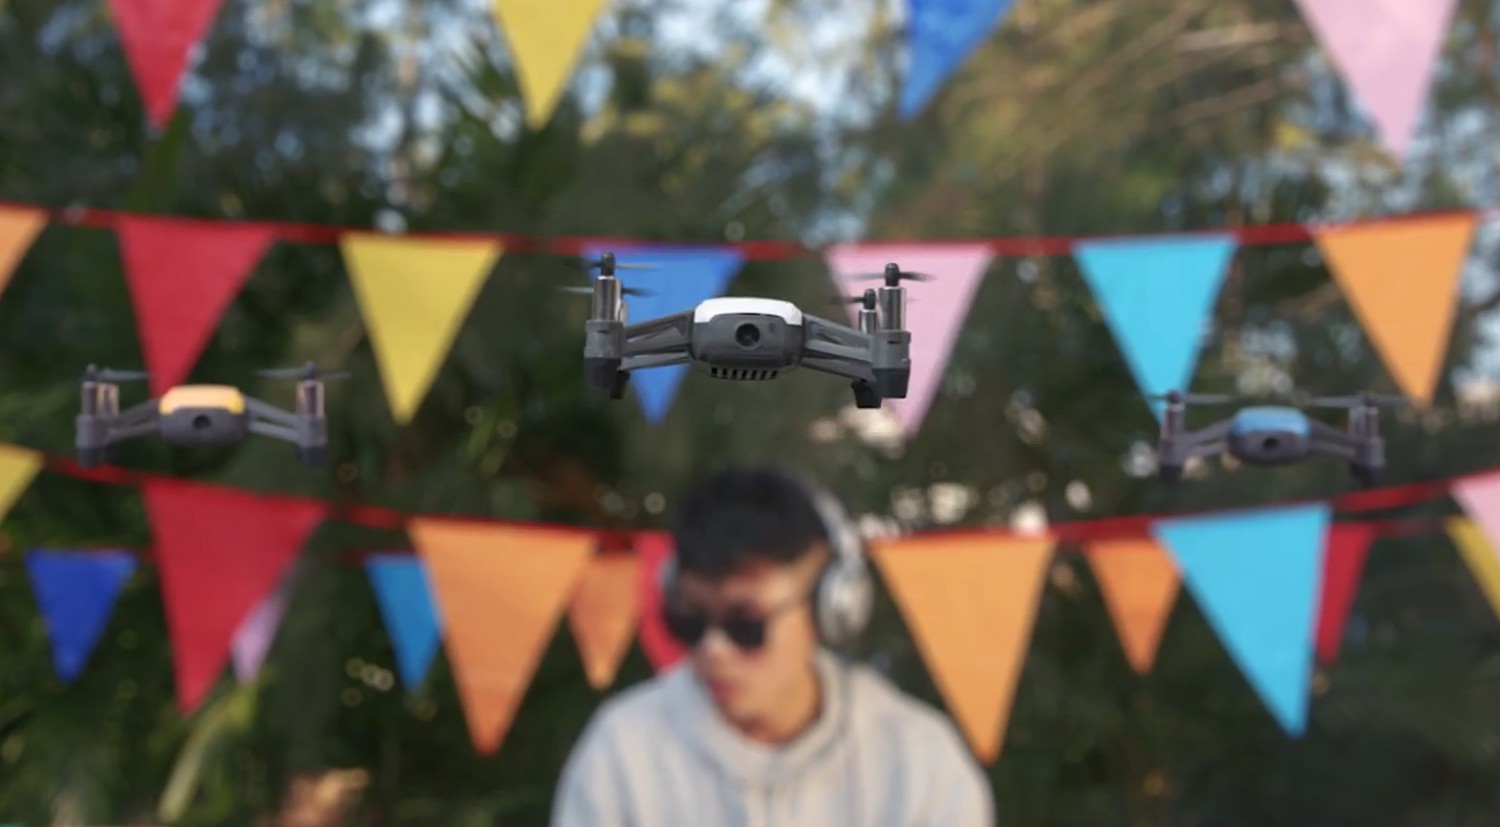 Prezentarea dronei Tello